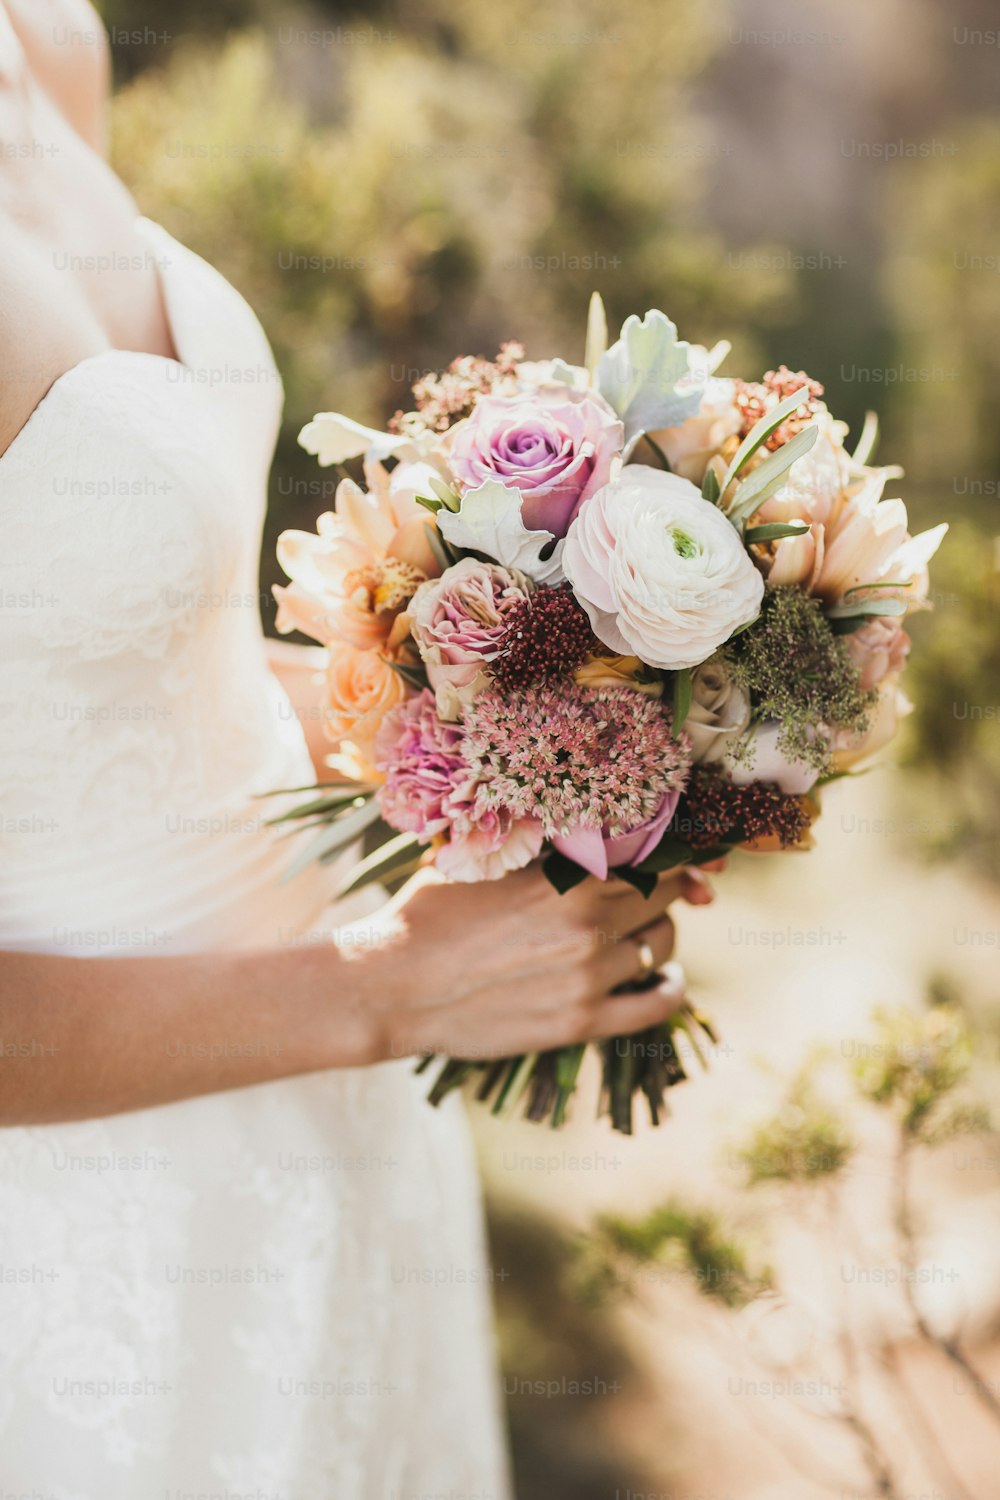 오렌지 가을 색의 작은 웨딩 부케를 손에 들고 있는 신부. 분홍색과 주황색 장미, 흰 모란, 말린 꽃과 나뭇잎.